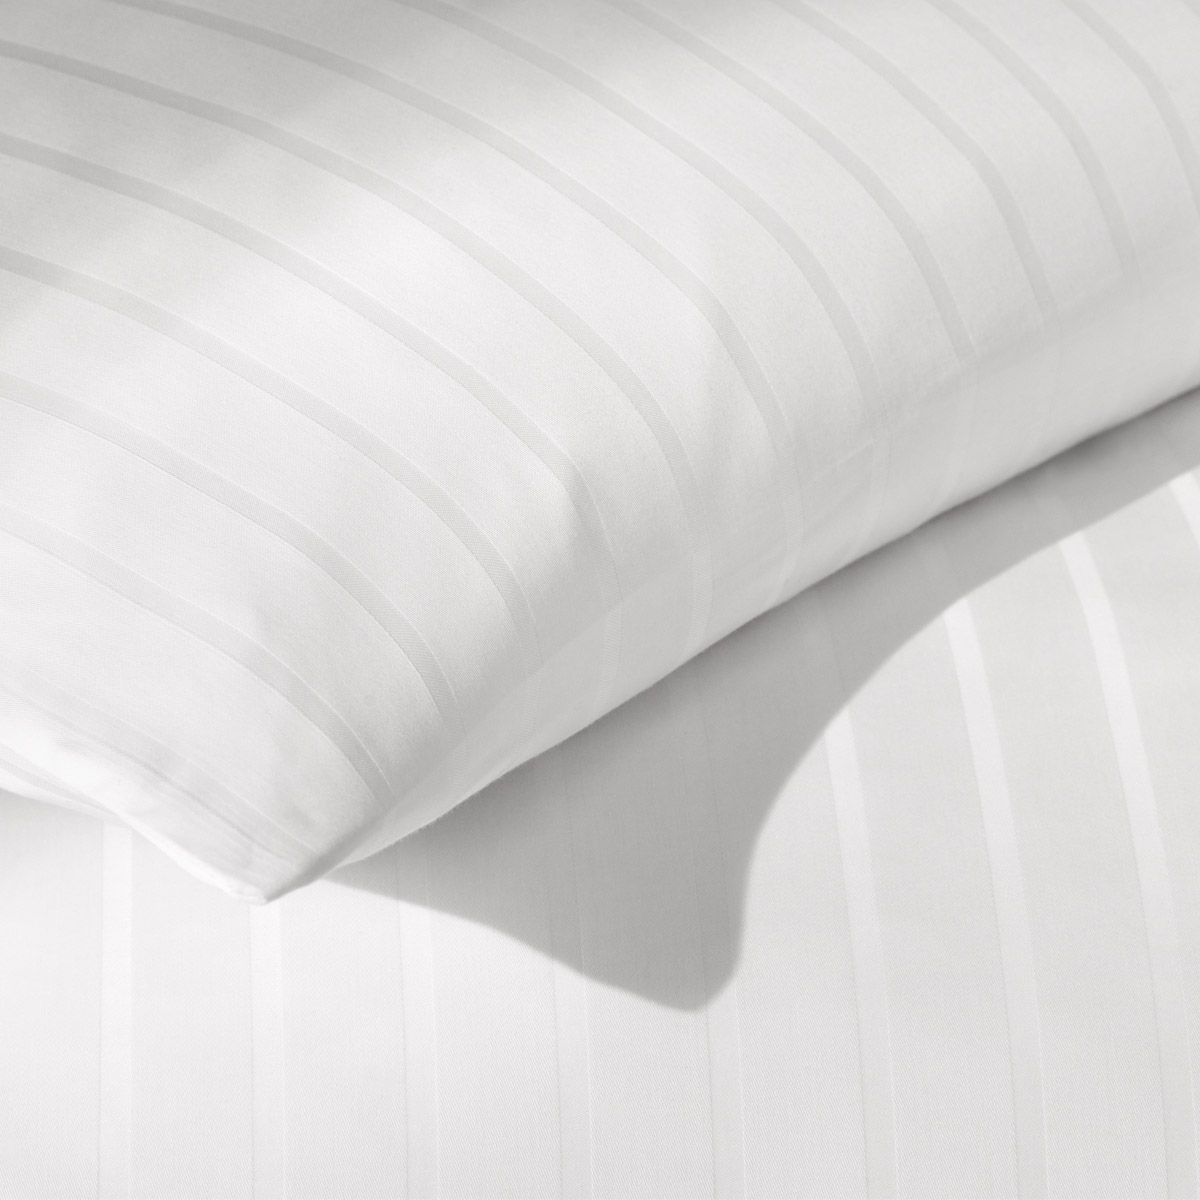 Detailaufnahme weiße Mako Satin Bettwäsche mit Streifen